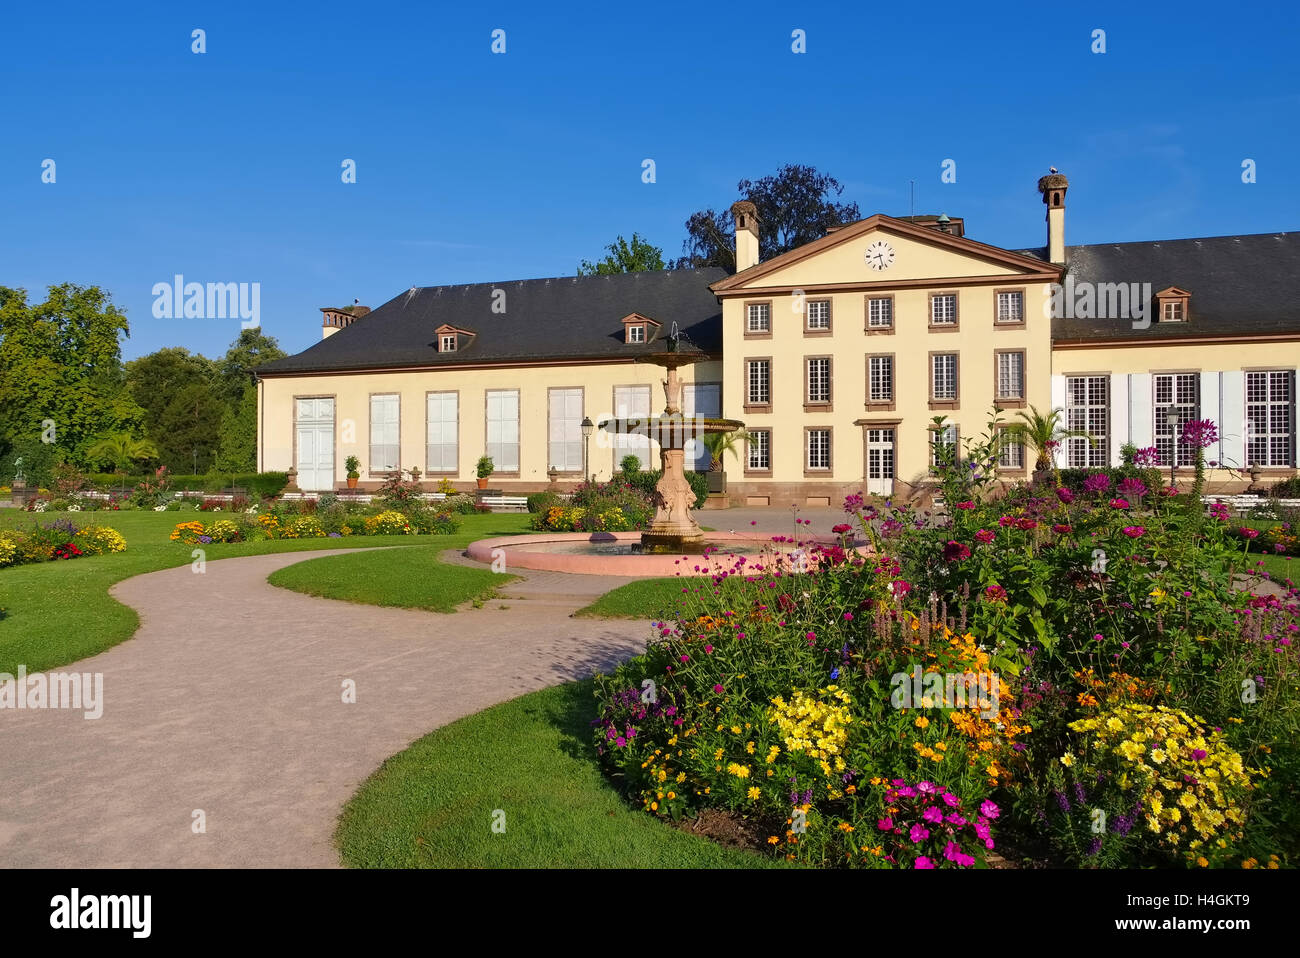 Strassburg, der schöne Orangerie-Park, Elsass - Strasbourg the Orangerie Park in  Alsace, France Stock Photo